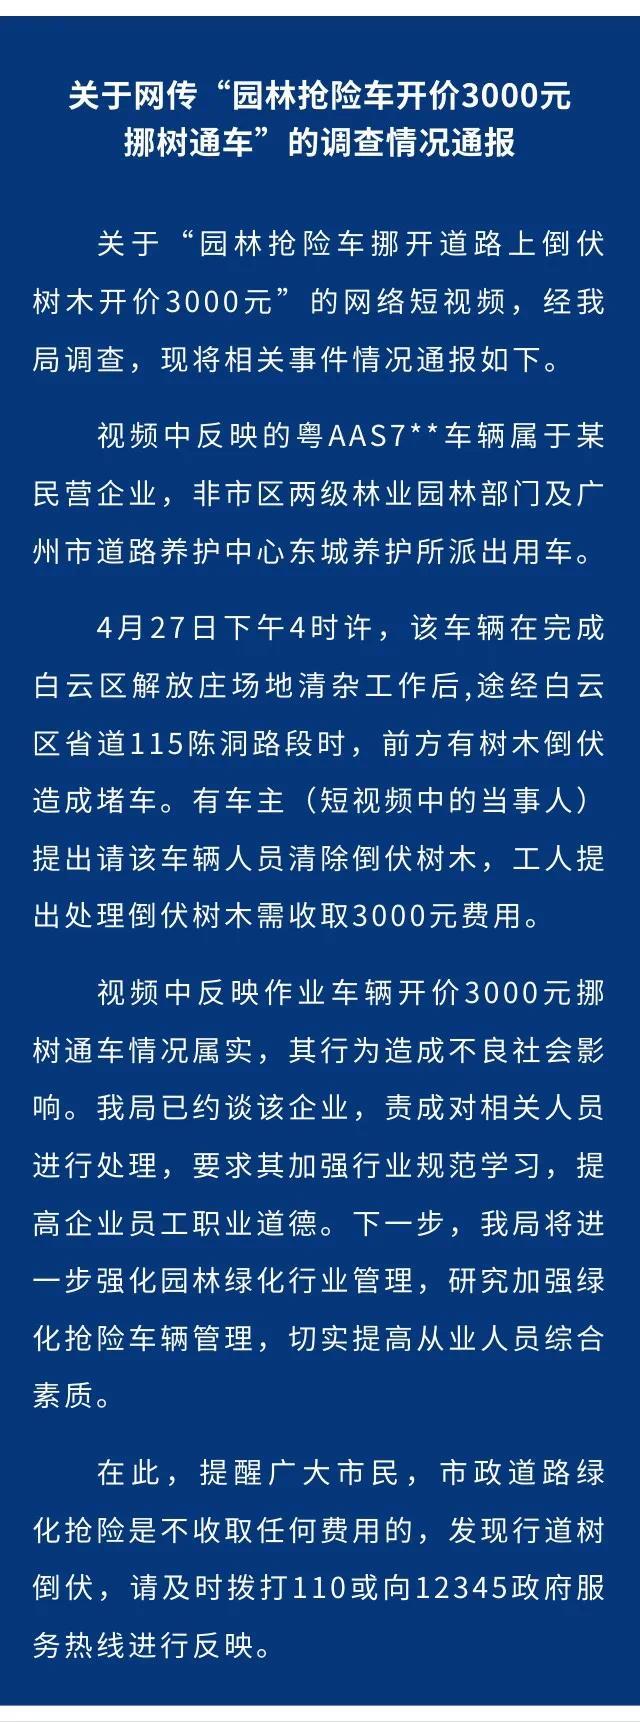 广州通报“园林抢险车开价3000元挪树通车”